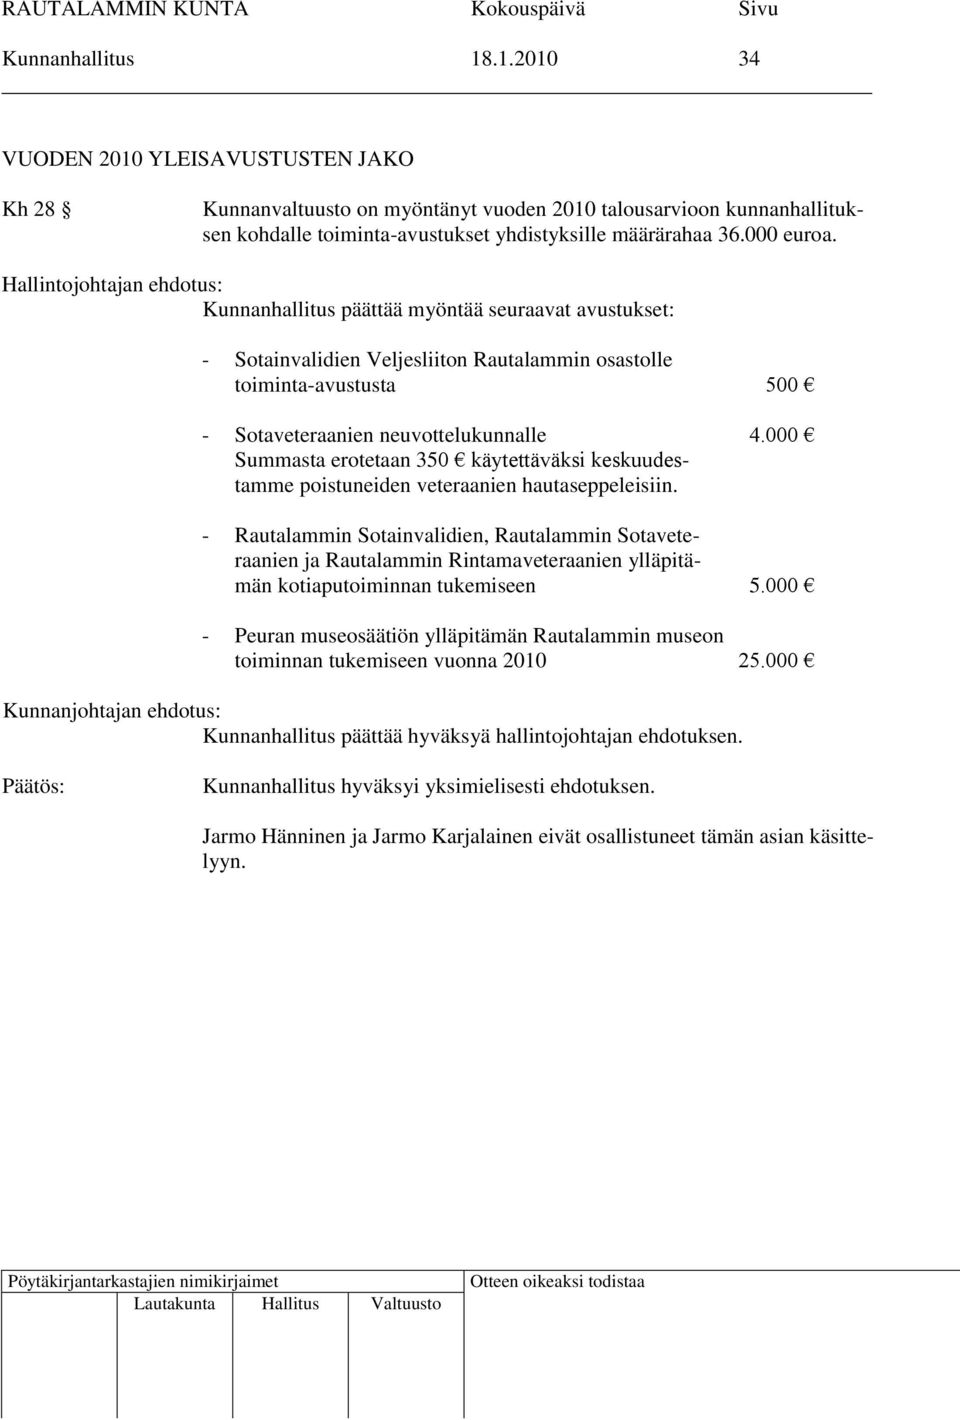 Hallintojohtajan ehdotus: Kunnanhallitus päättää myöntää seuraavat avustukset: - Sotainvalidien Veljesliiton Rautalammin osastolle toiminta-avustusta 500 - Sotaveteraanien neuvottelukunnalle 4.